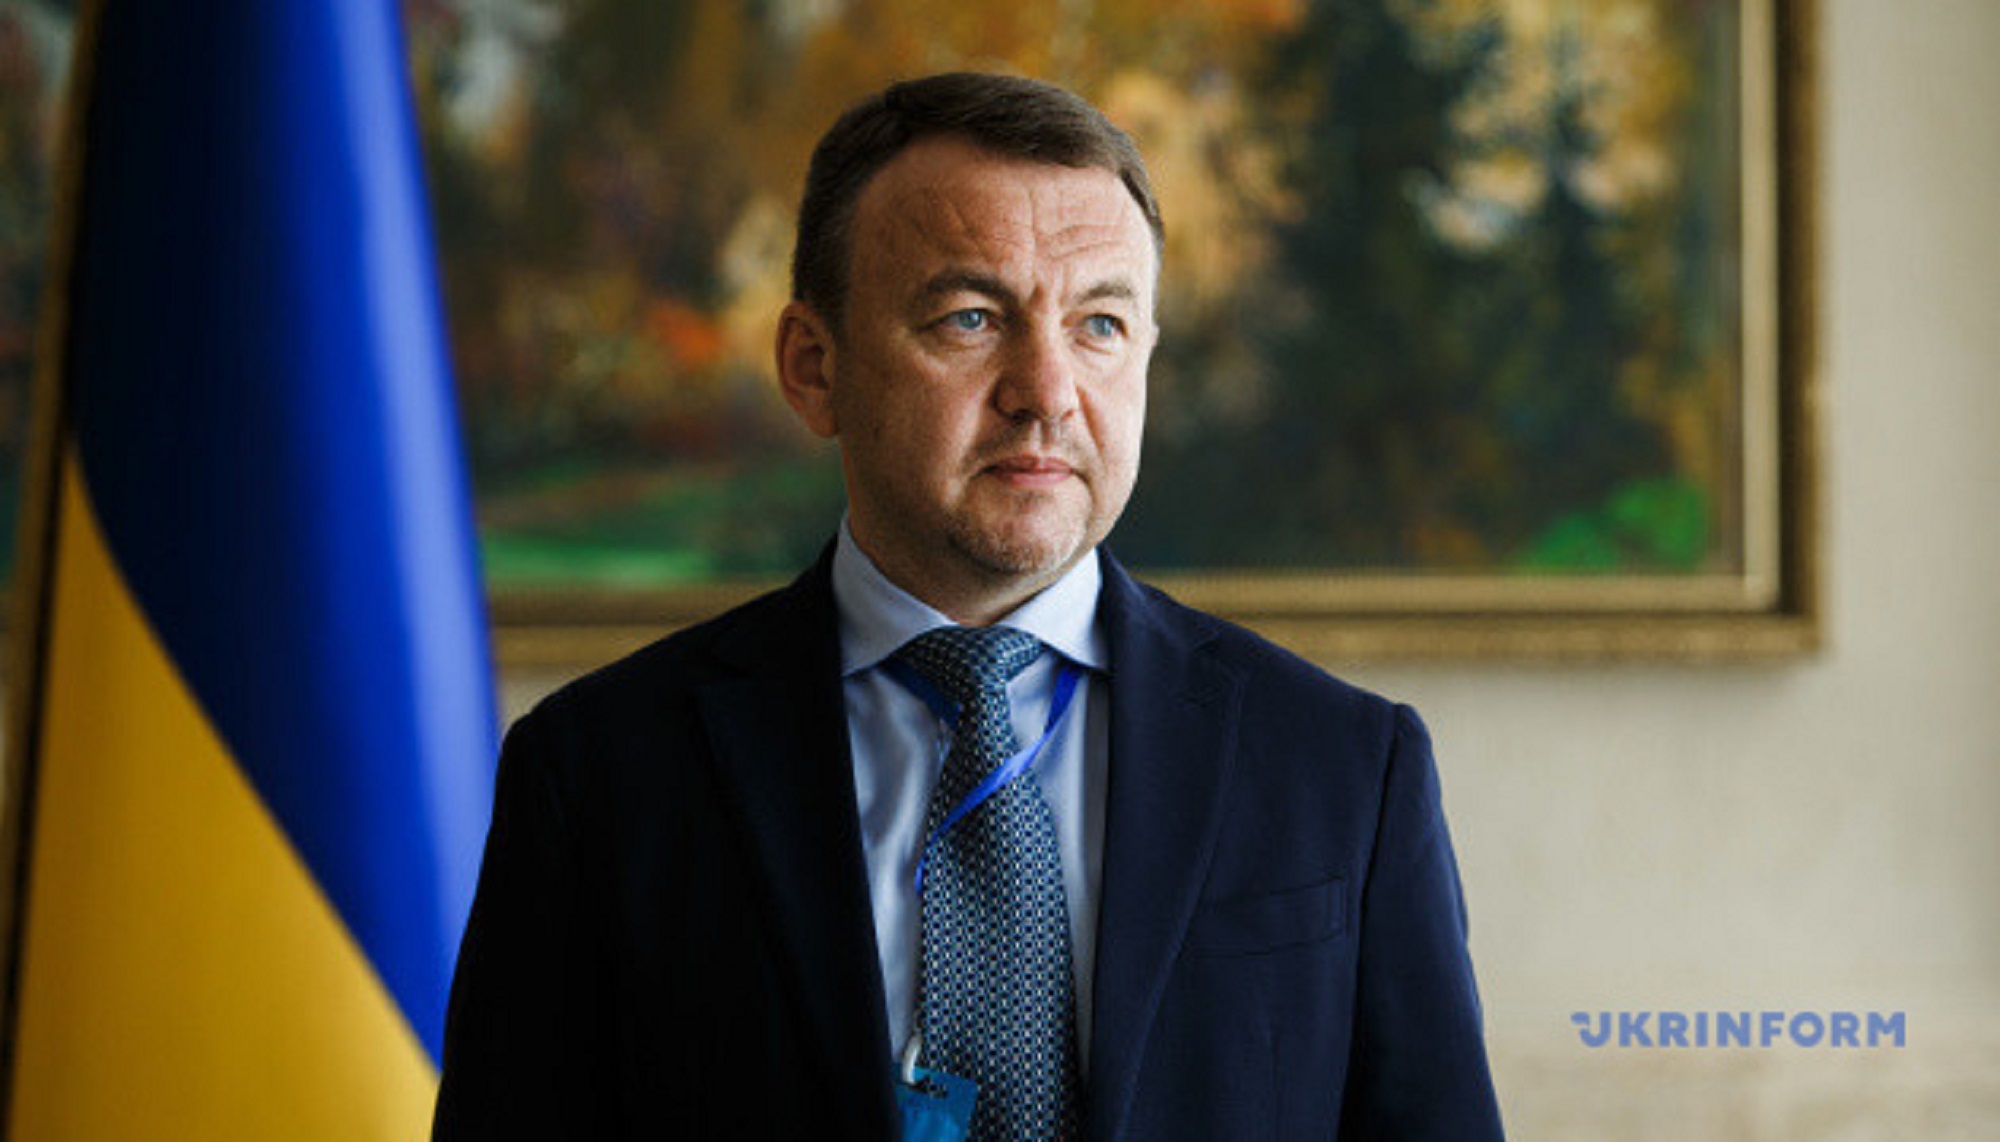 Алексей Петров прокомментировал сегодняшнее решение депутатов областного совета о досрочном прекращении полномочий председателя Закарпатского областного совета.